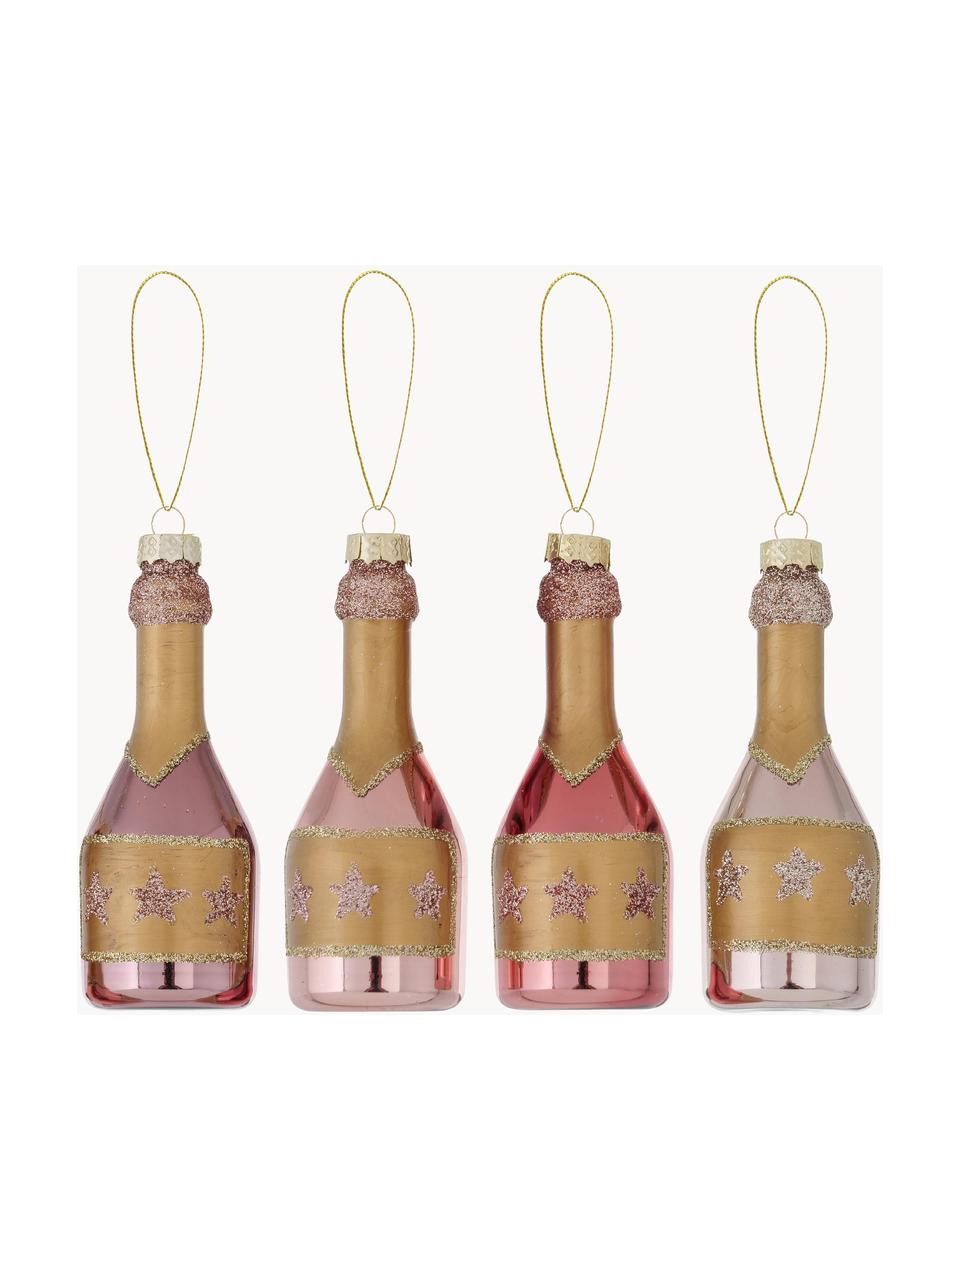 Set 4 addobbi di Natale Champagne, alt. 10 cm, Tonalità rosa, dorato, Ø 4 x Alt. 10 cm